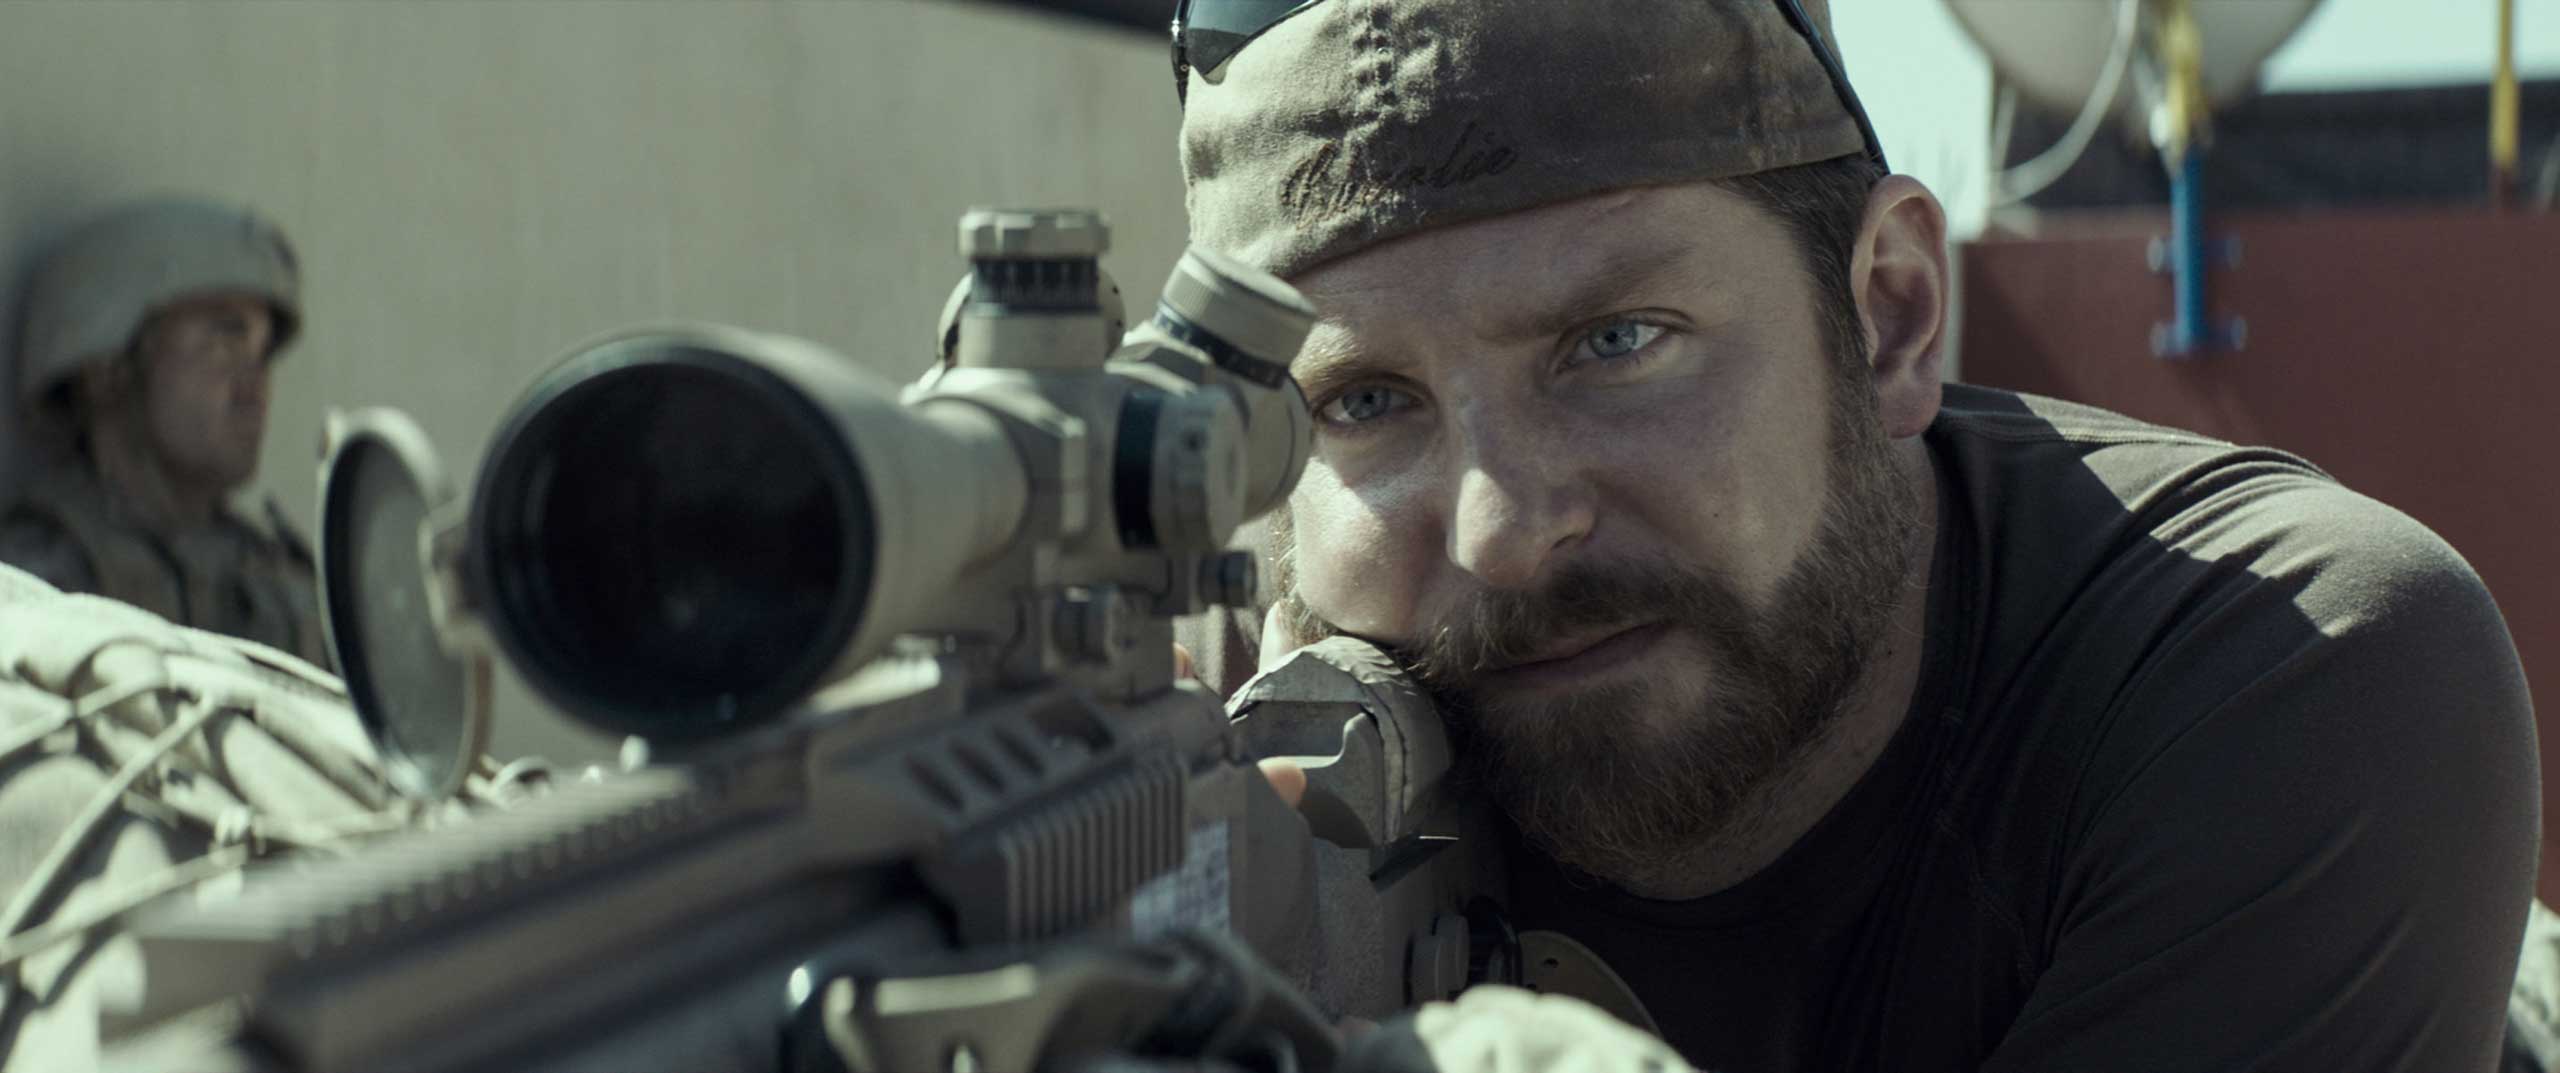 Bradley Cooper as Chris Kyle in Warner Bros. Pictures' and Village Roadshow Pictures' <em>American Sniper</em>. (Warner Bros.)